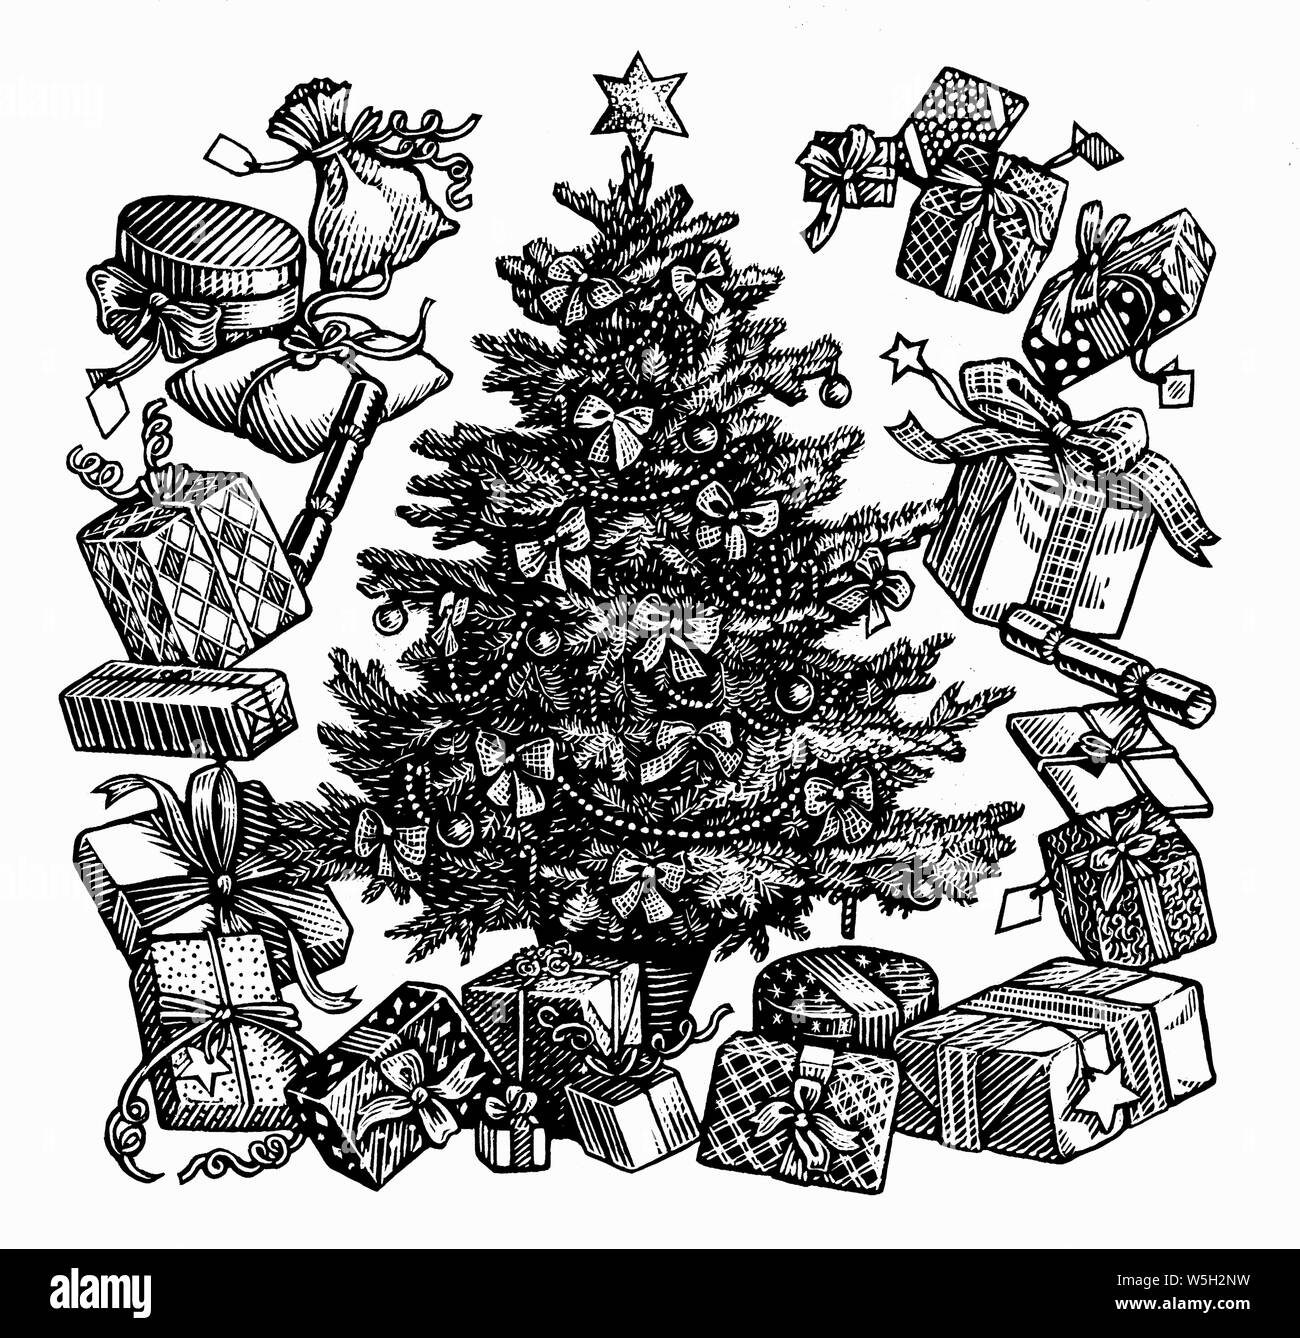 Blanco y negro scraperboard grabado de árbol de Navidad decorado rodeado de regalos Foto de stock